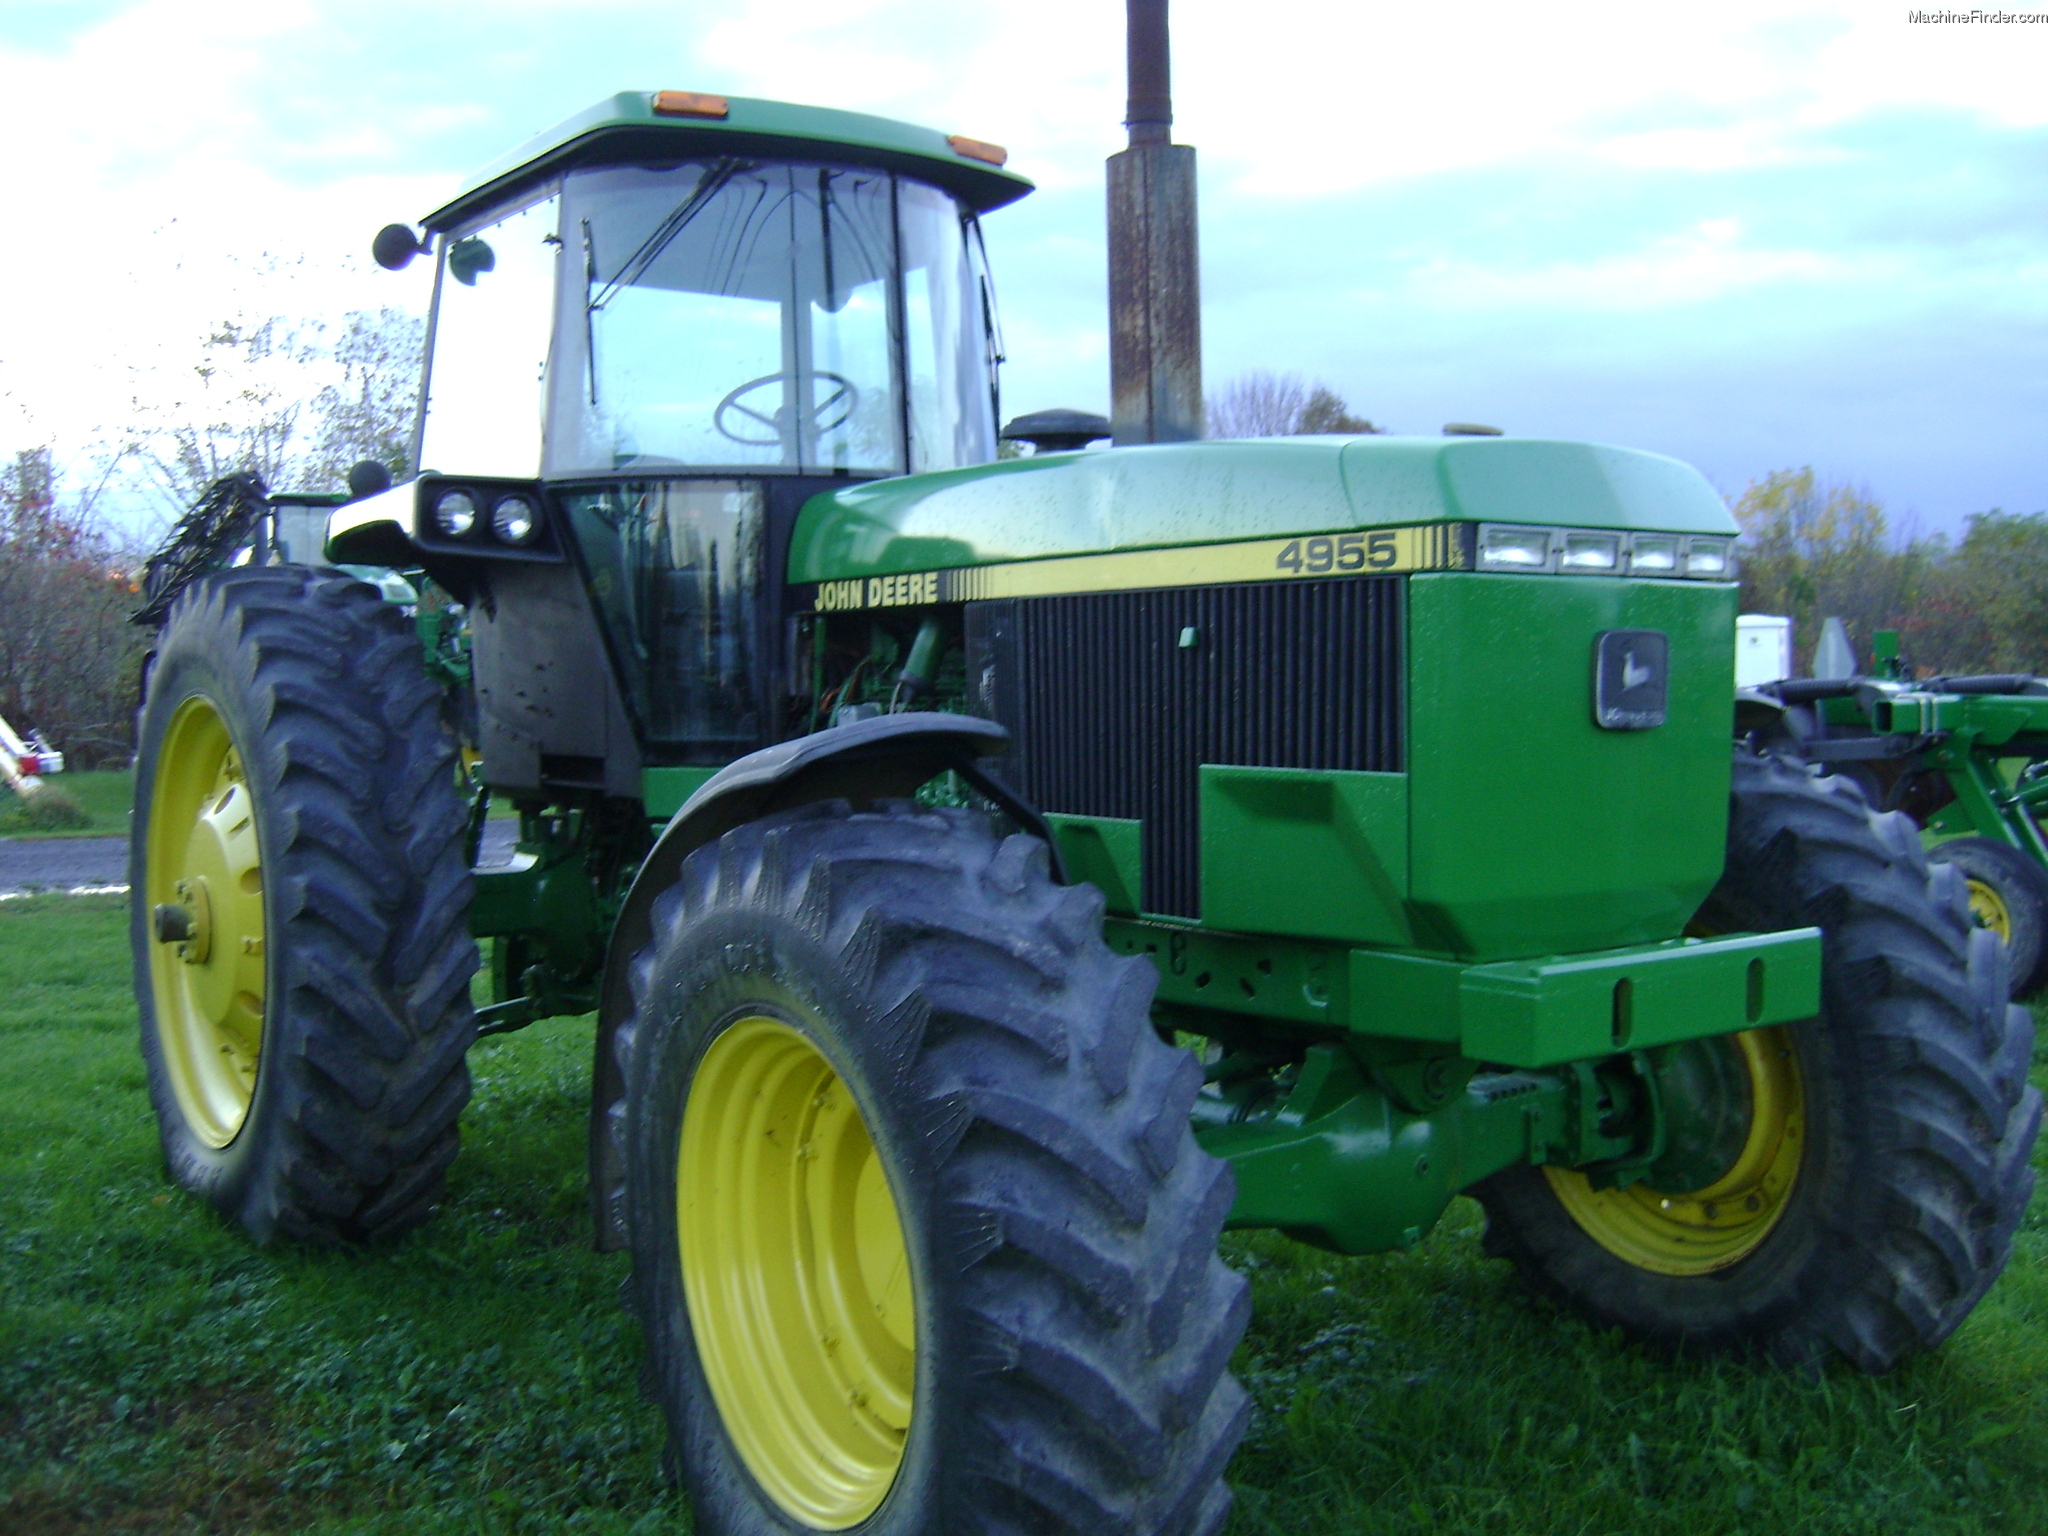 1990 John Deere 4955 Tractors Row Crop 100hp John Deere Machinefinder 9857